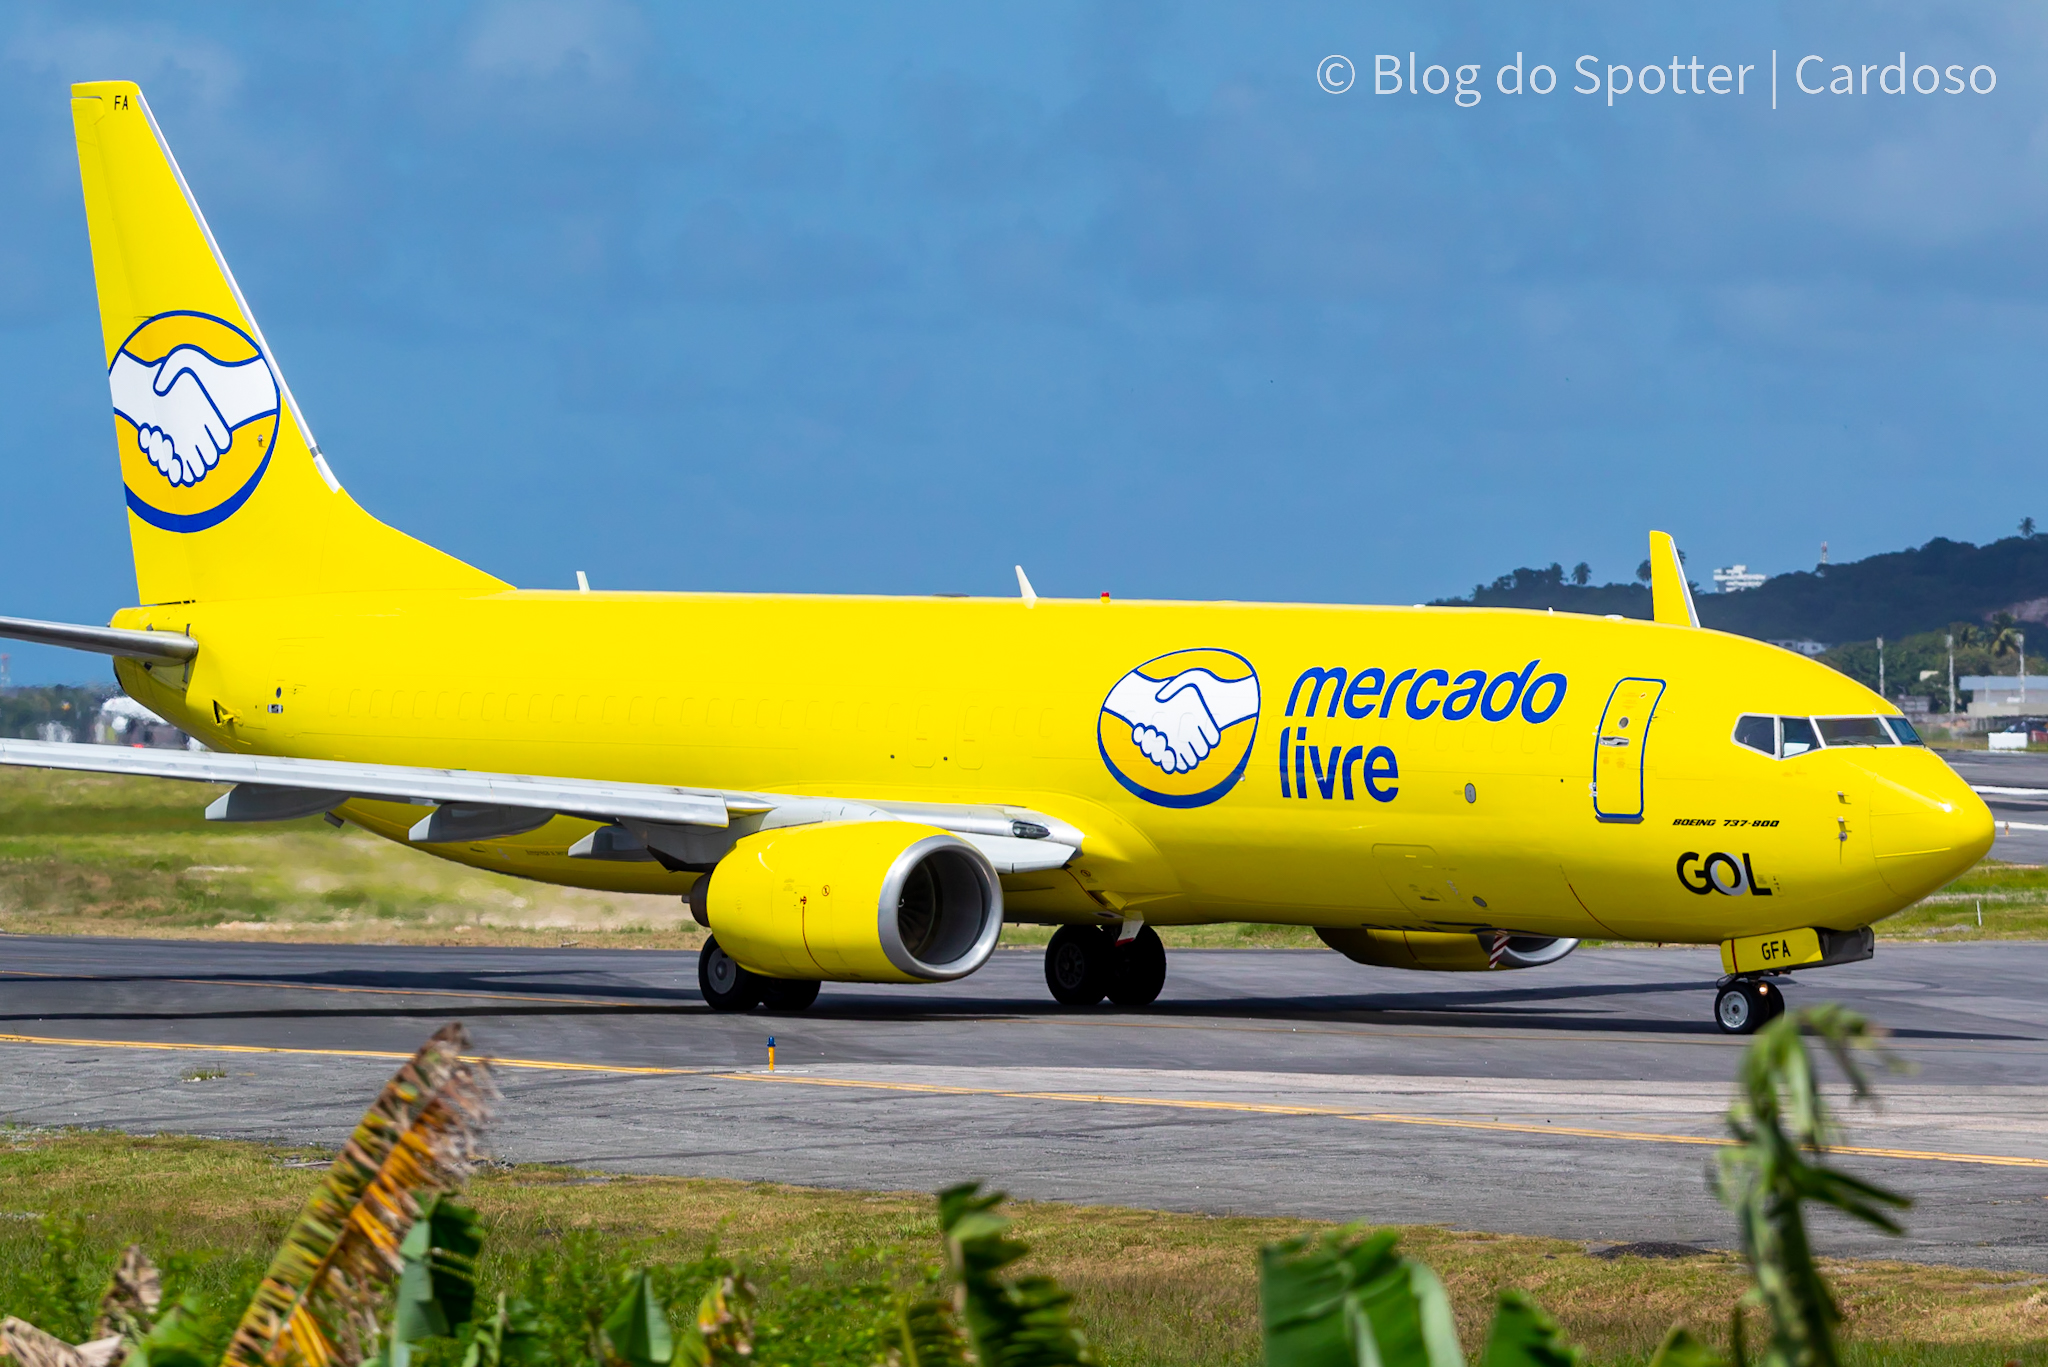 PS-GFA - Boeing 737-8EH (BCF) - Mercado Livre e GOL